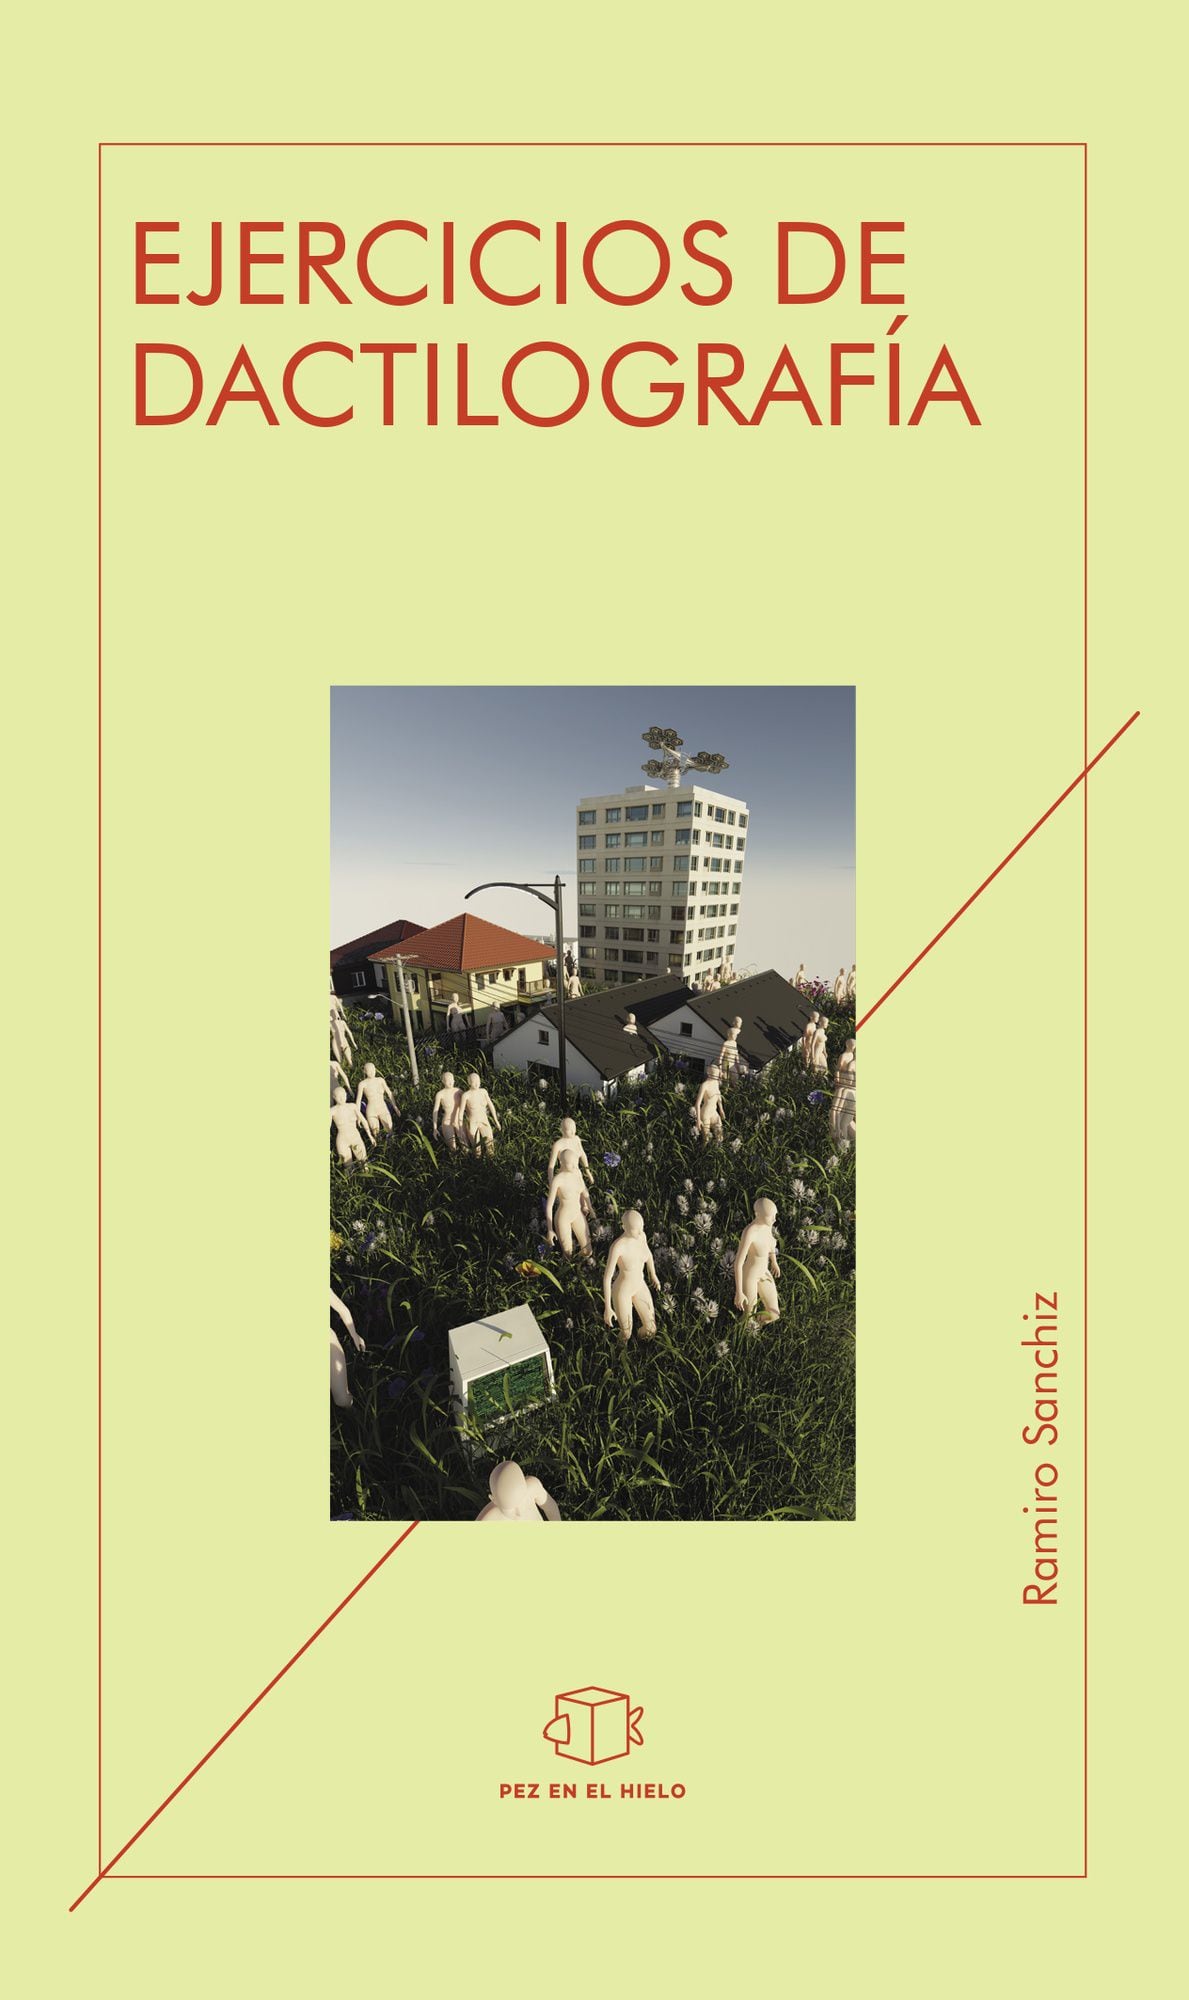 Ramiro Sanchiz presenta también e Bogotá 'Ejercicios de dactilografía'. Esta portada corresponde a la edición uruguaya, y en Colombia lo publica Editorial Vestigio.